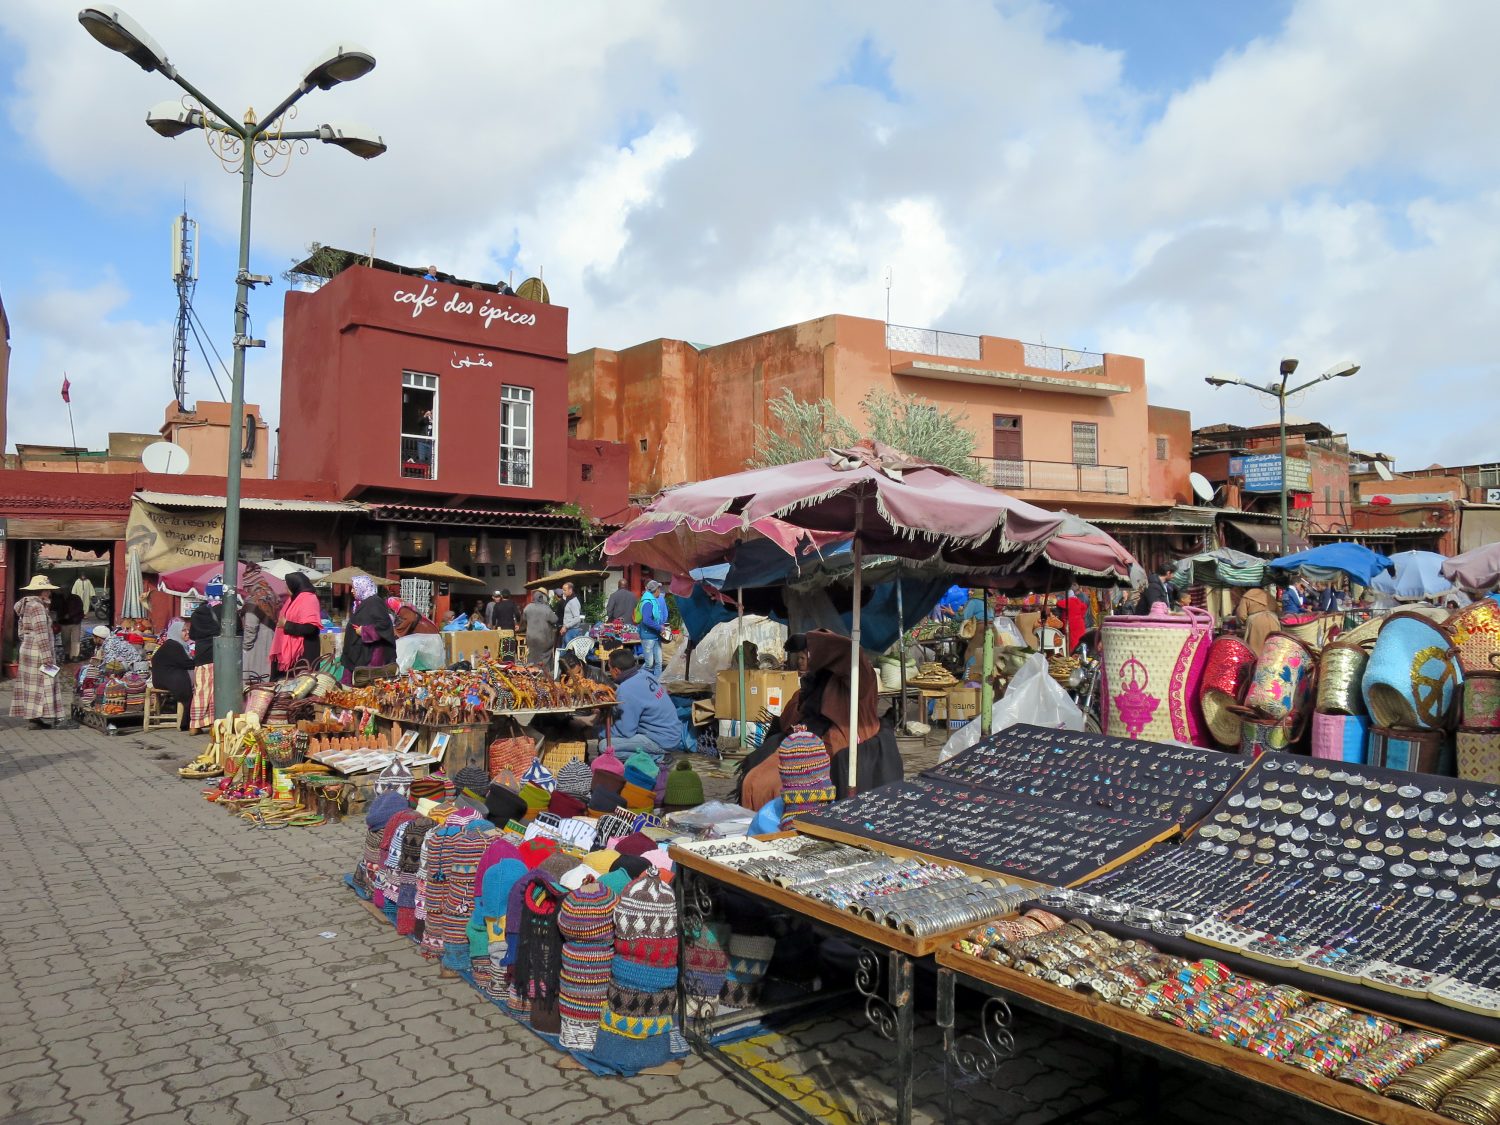 1001 Nacht: 13 Dinge, die man unbedingt in Marrakesch machen muss